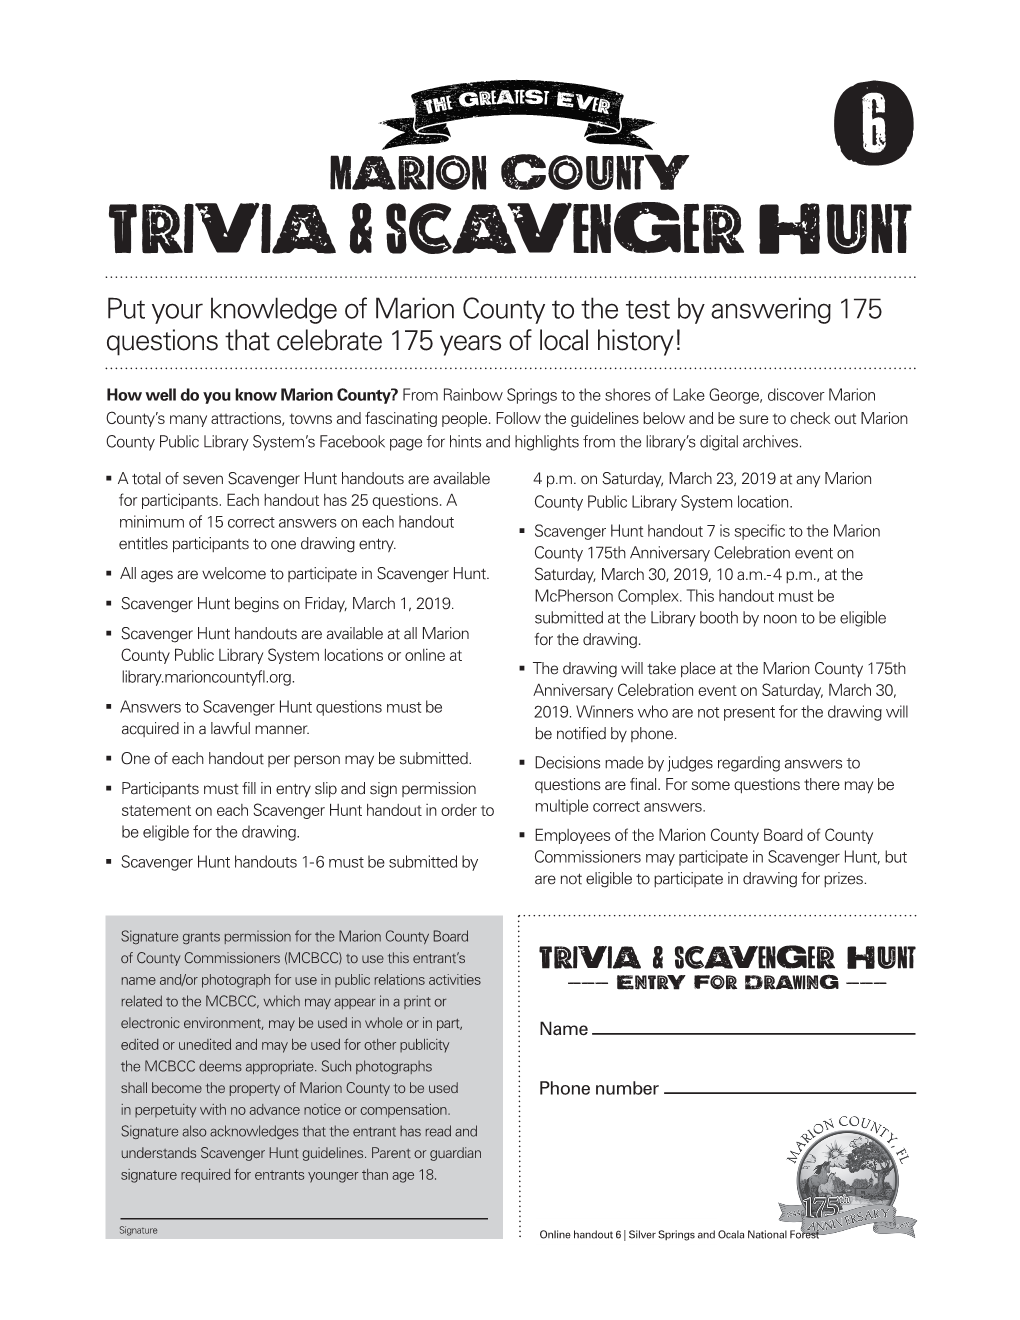 Trivia & Scavenger Hunt